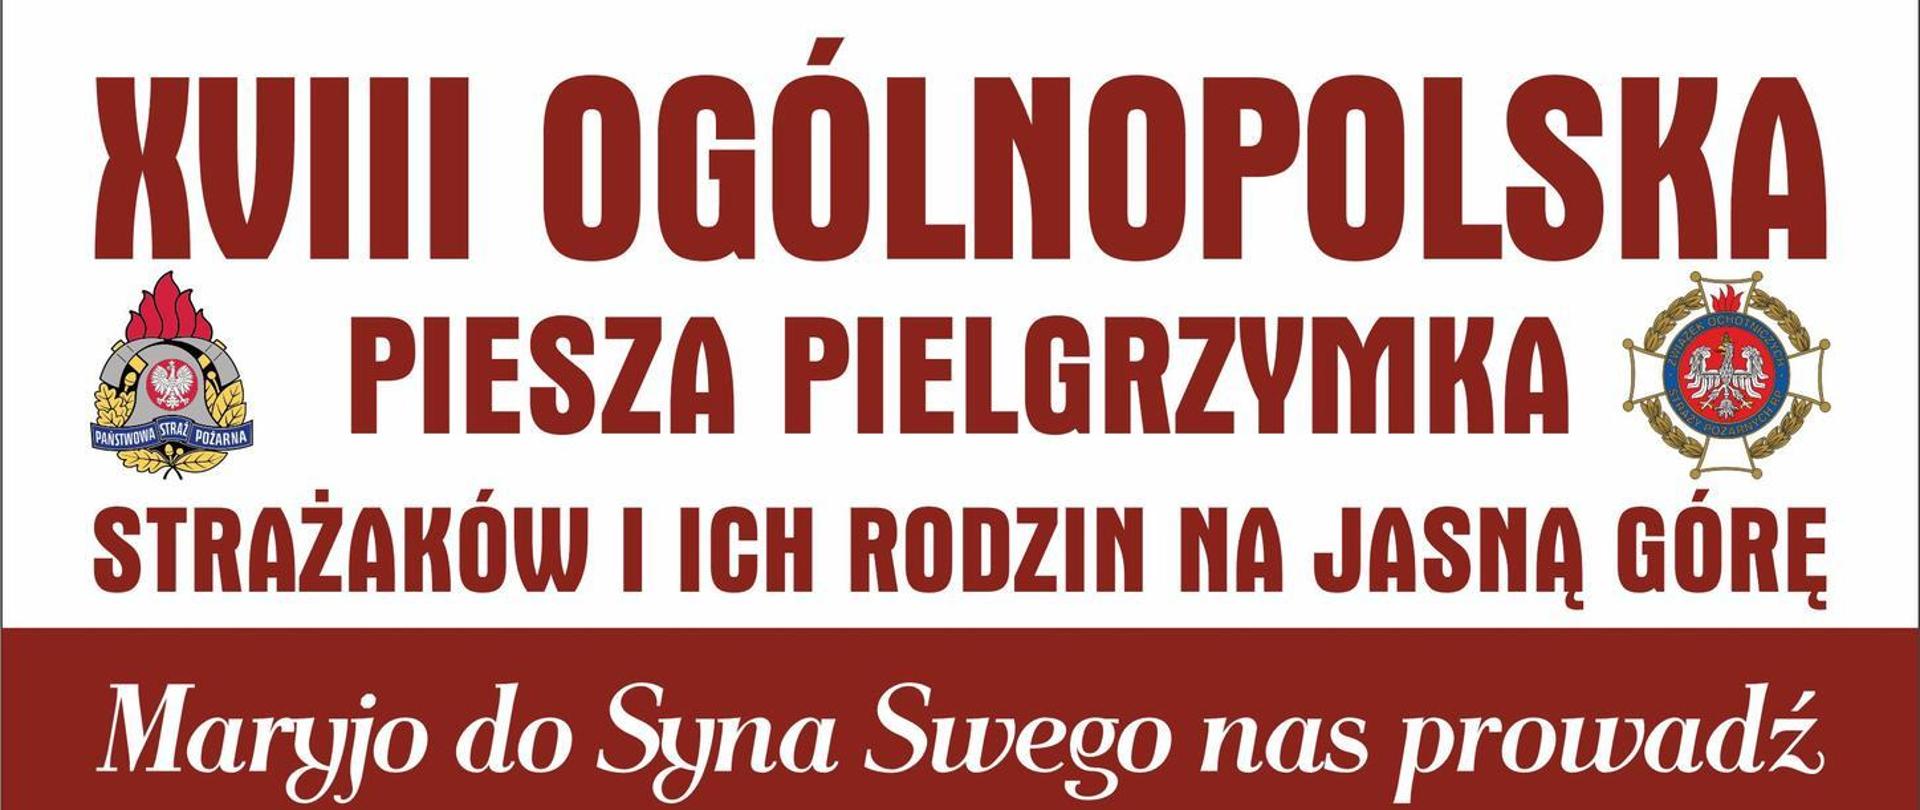 Plakat XVIII Ogólnopolskiej Pieszej Pielgrzymki Strażaków Na Jasną Górę.